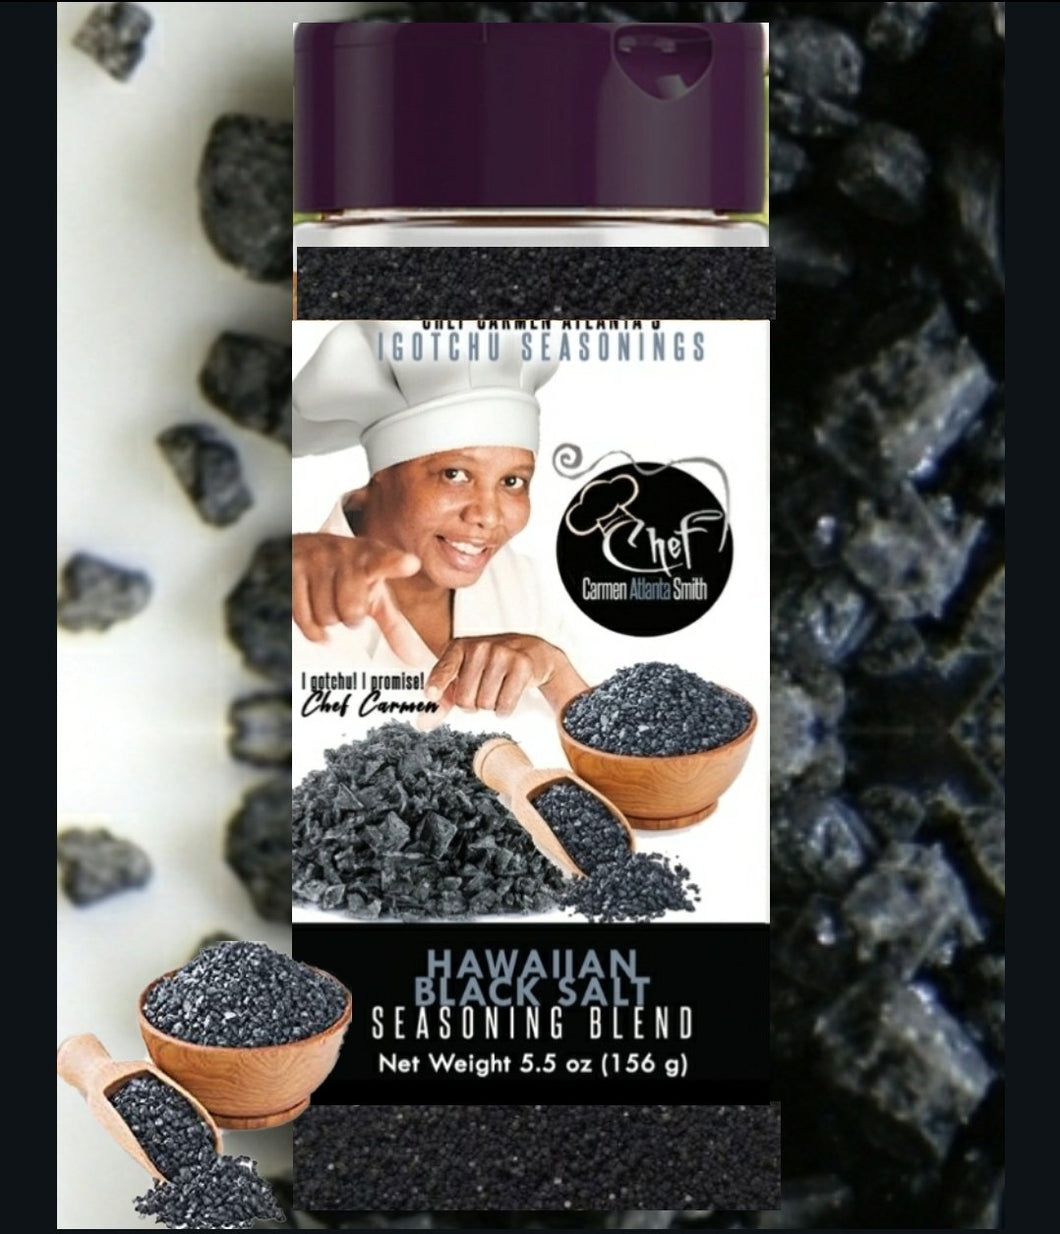 Igotchu Hawaiian Black salt